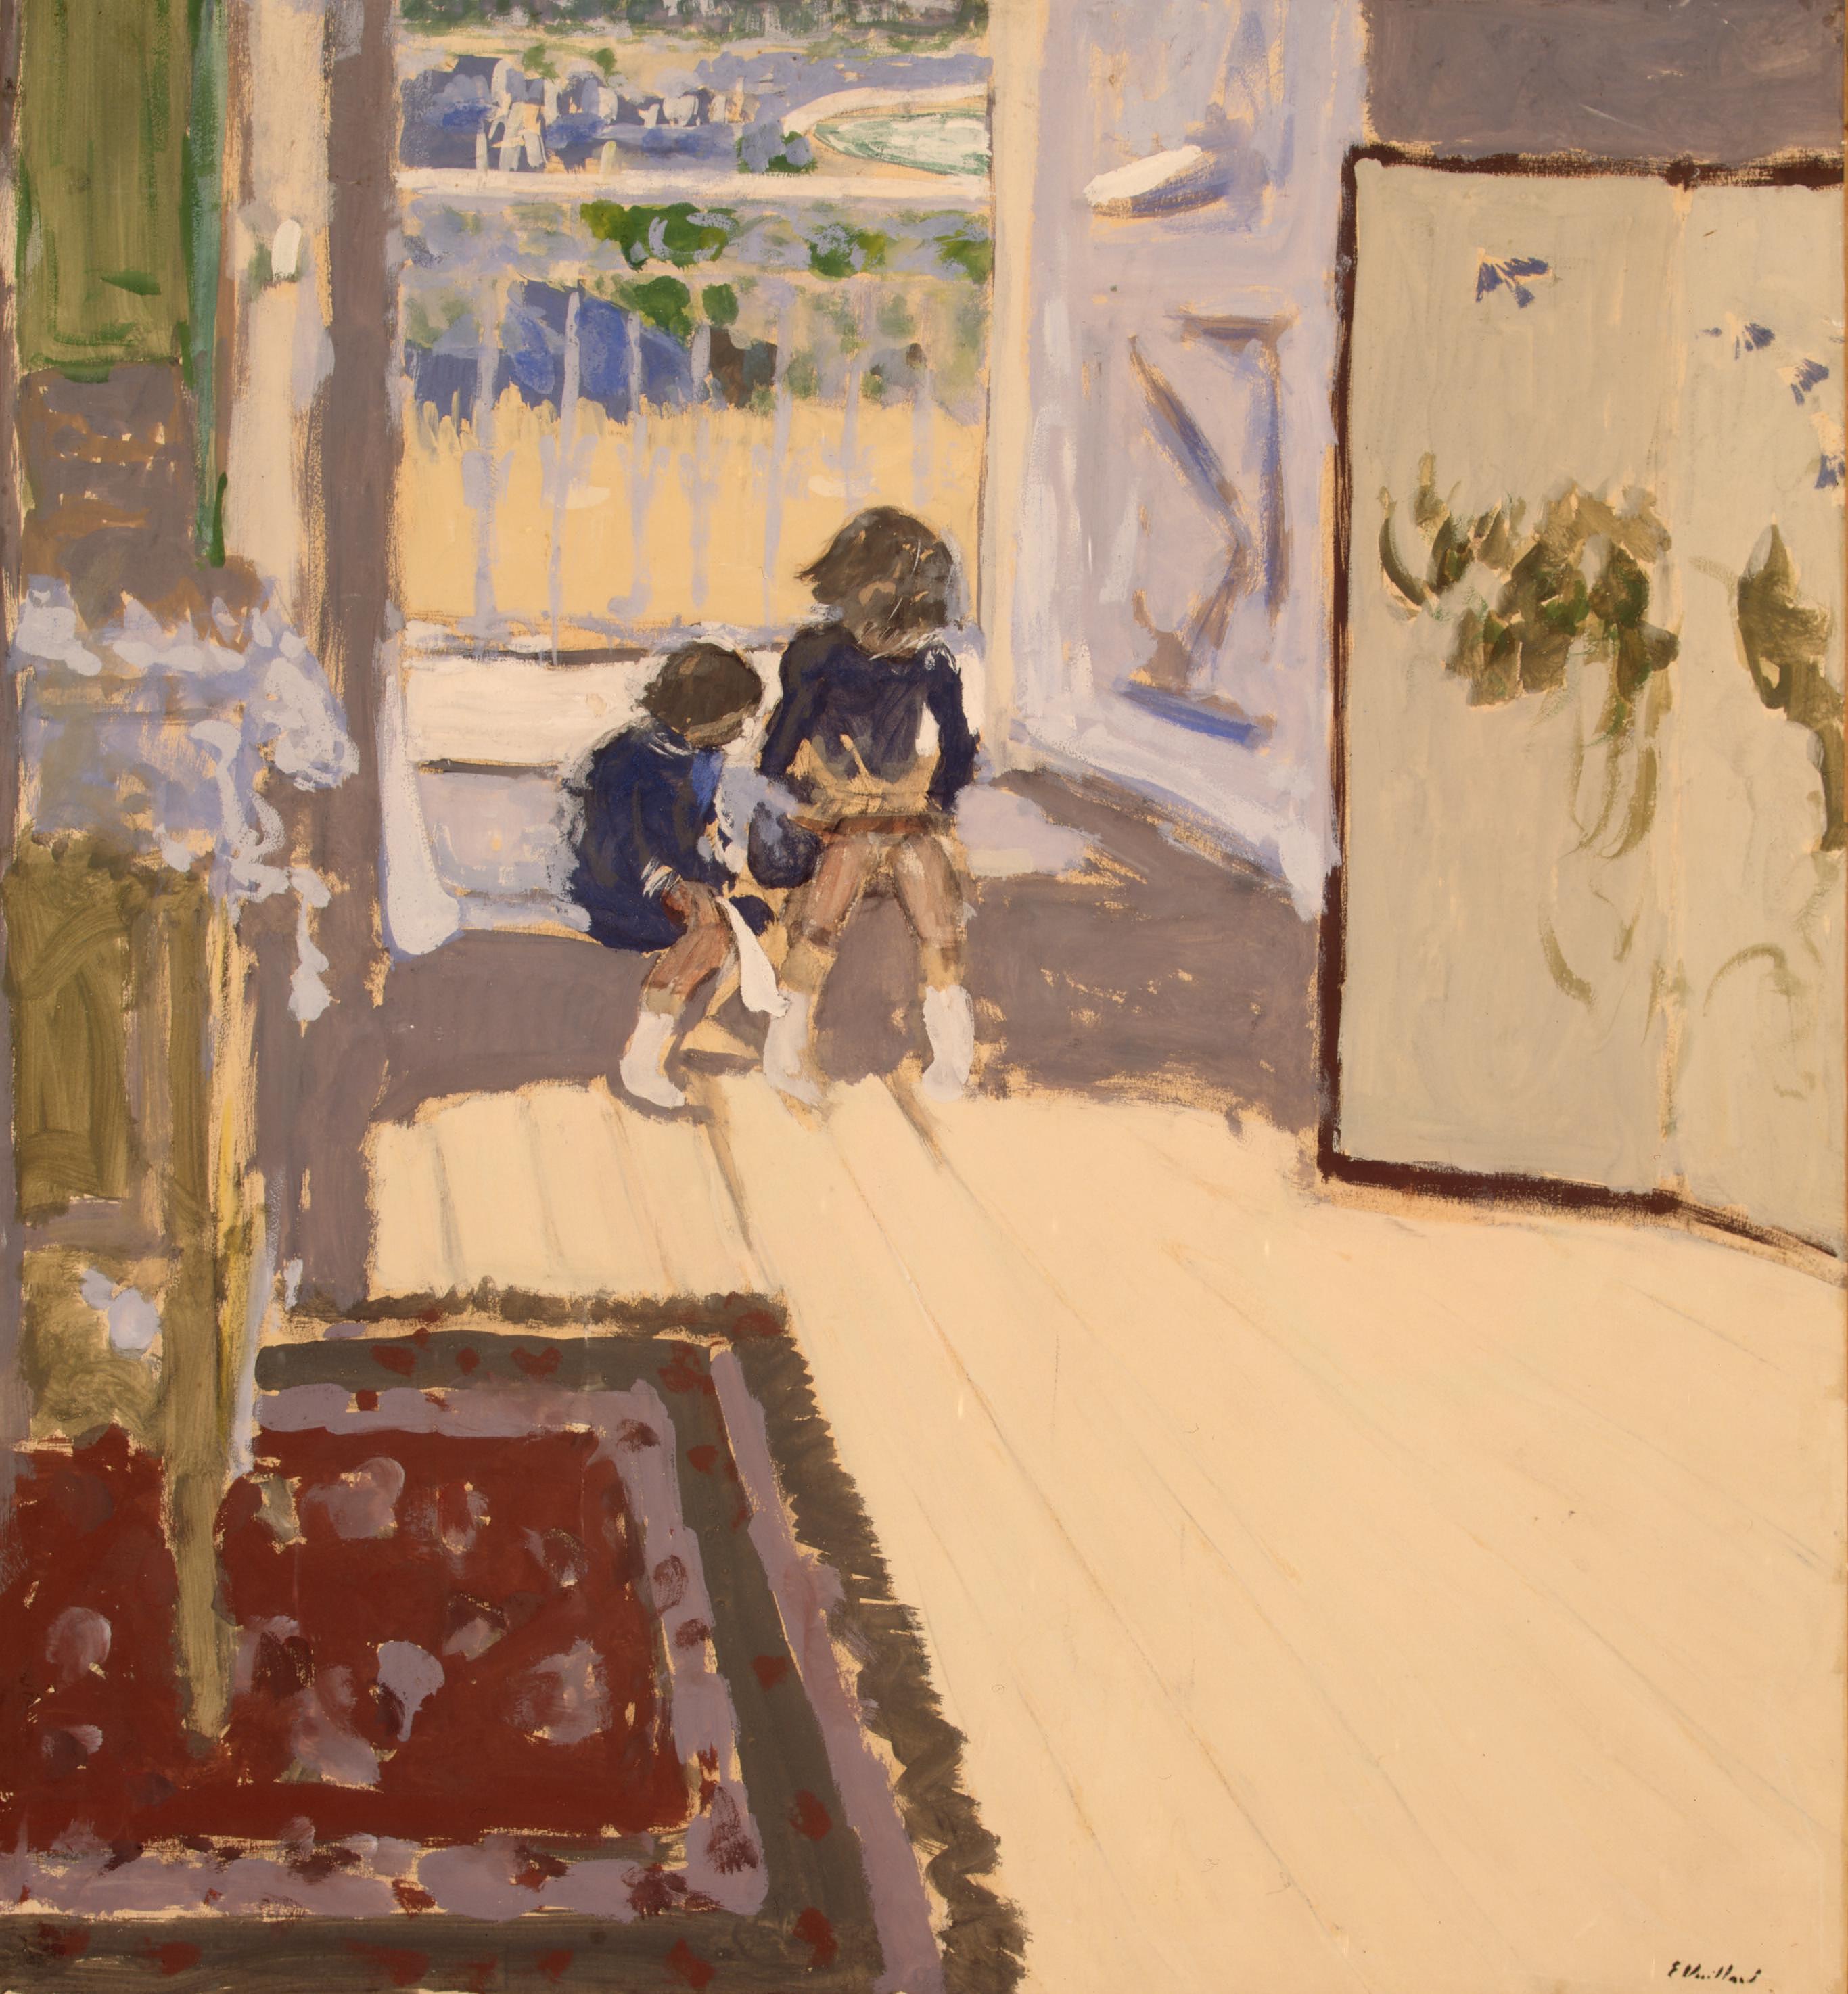 屋子里的孩子 by 爱德华 维拉德 - ca. 1909 - 84,5 x 77,7 cm 艾尔米塔什博物馆